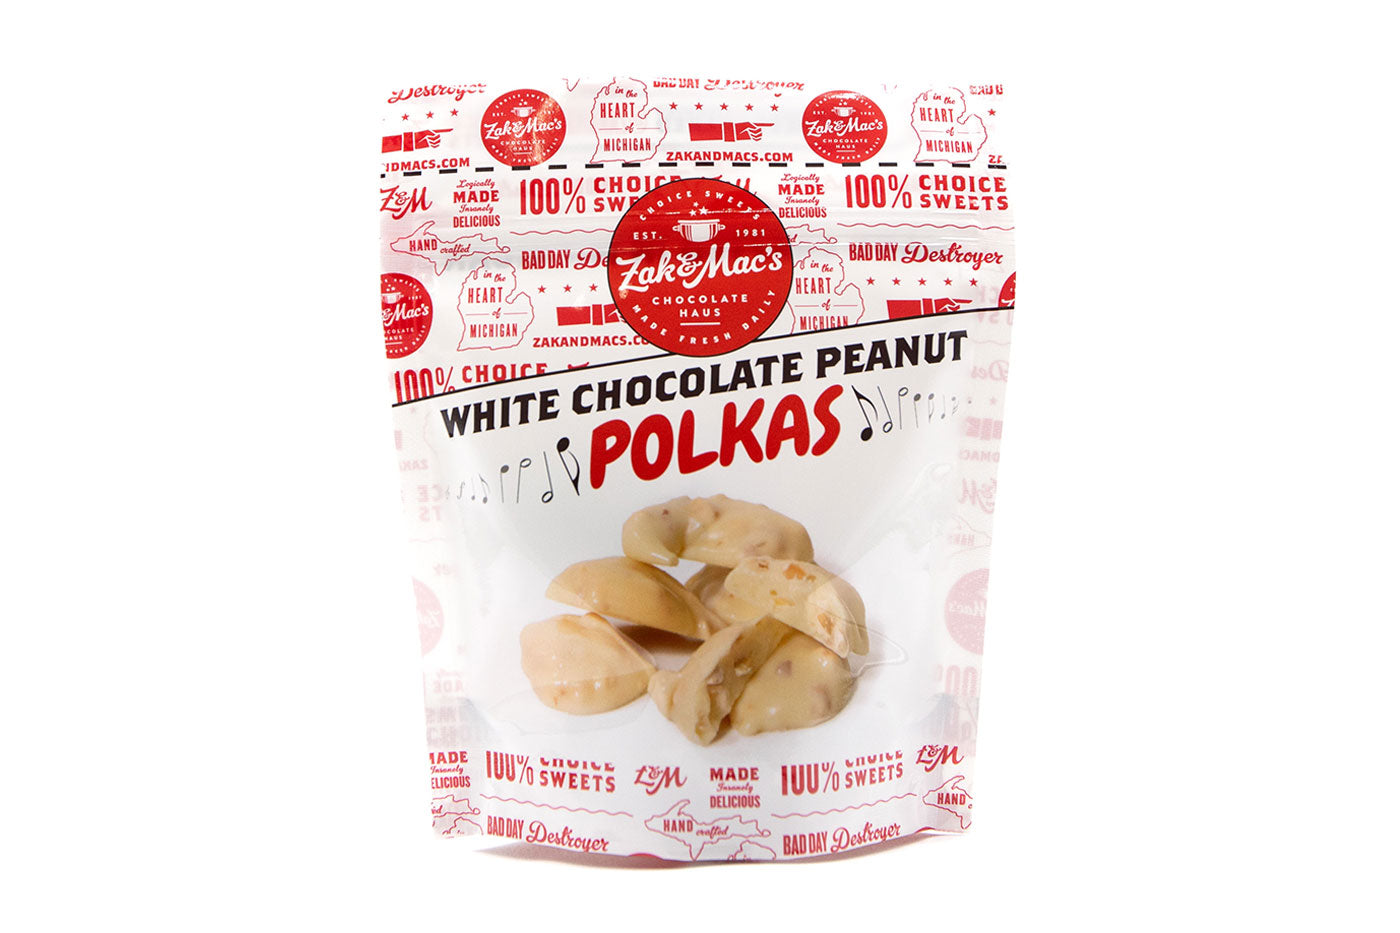 White Chocolate Peanut Polkas